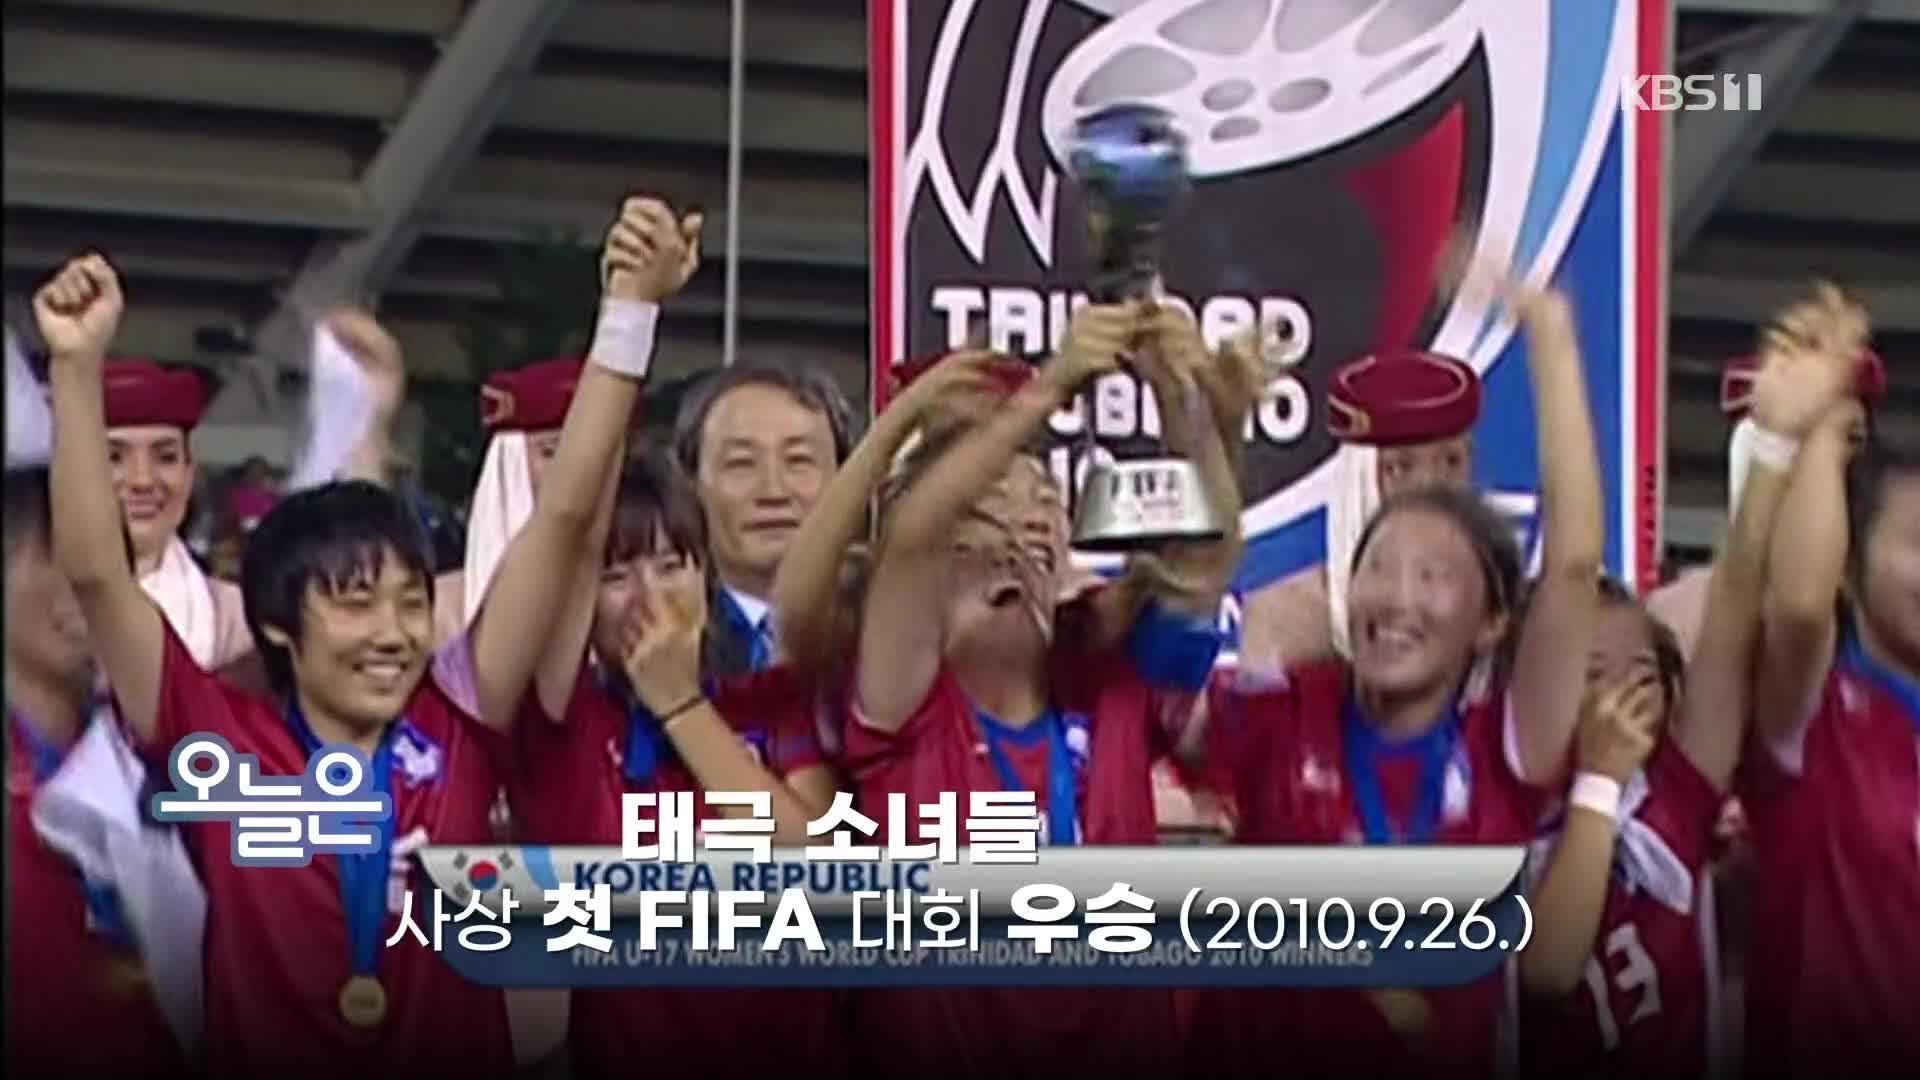 [오늘은] 태극 소녀들 사상 첫 FIFA 대회 우승 (2010.9.26.)